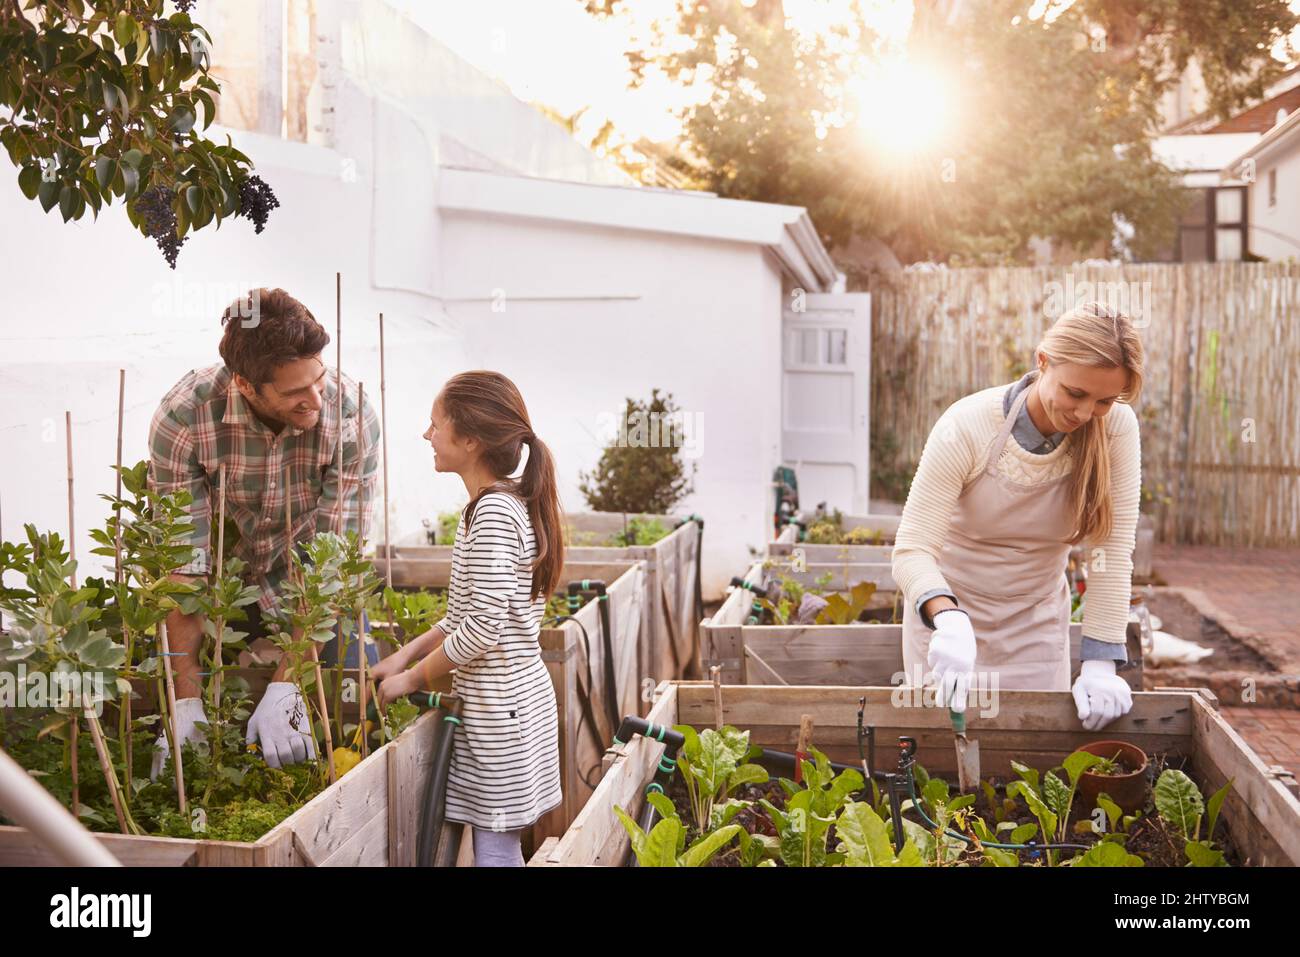 Einige Gartenarbeit als Familie getan. Aufnahme einer Familie, die in ihrem Hinterhof gemeinsam gärtnerte. Stockfoto